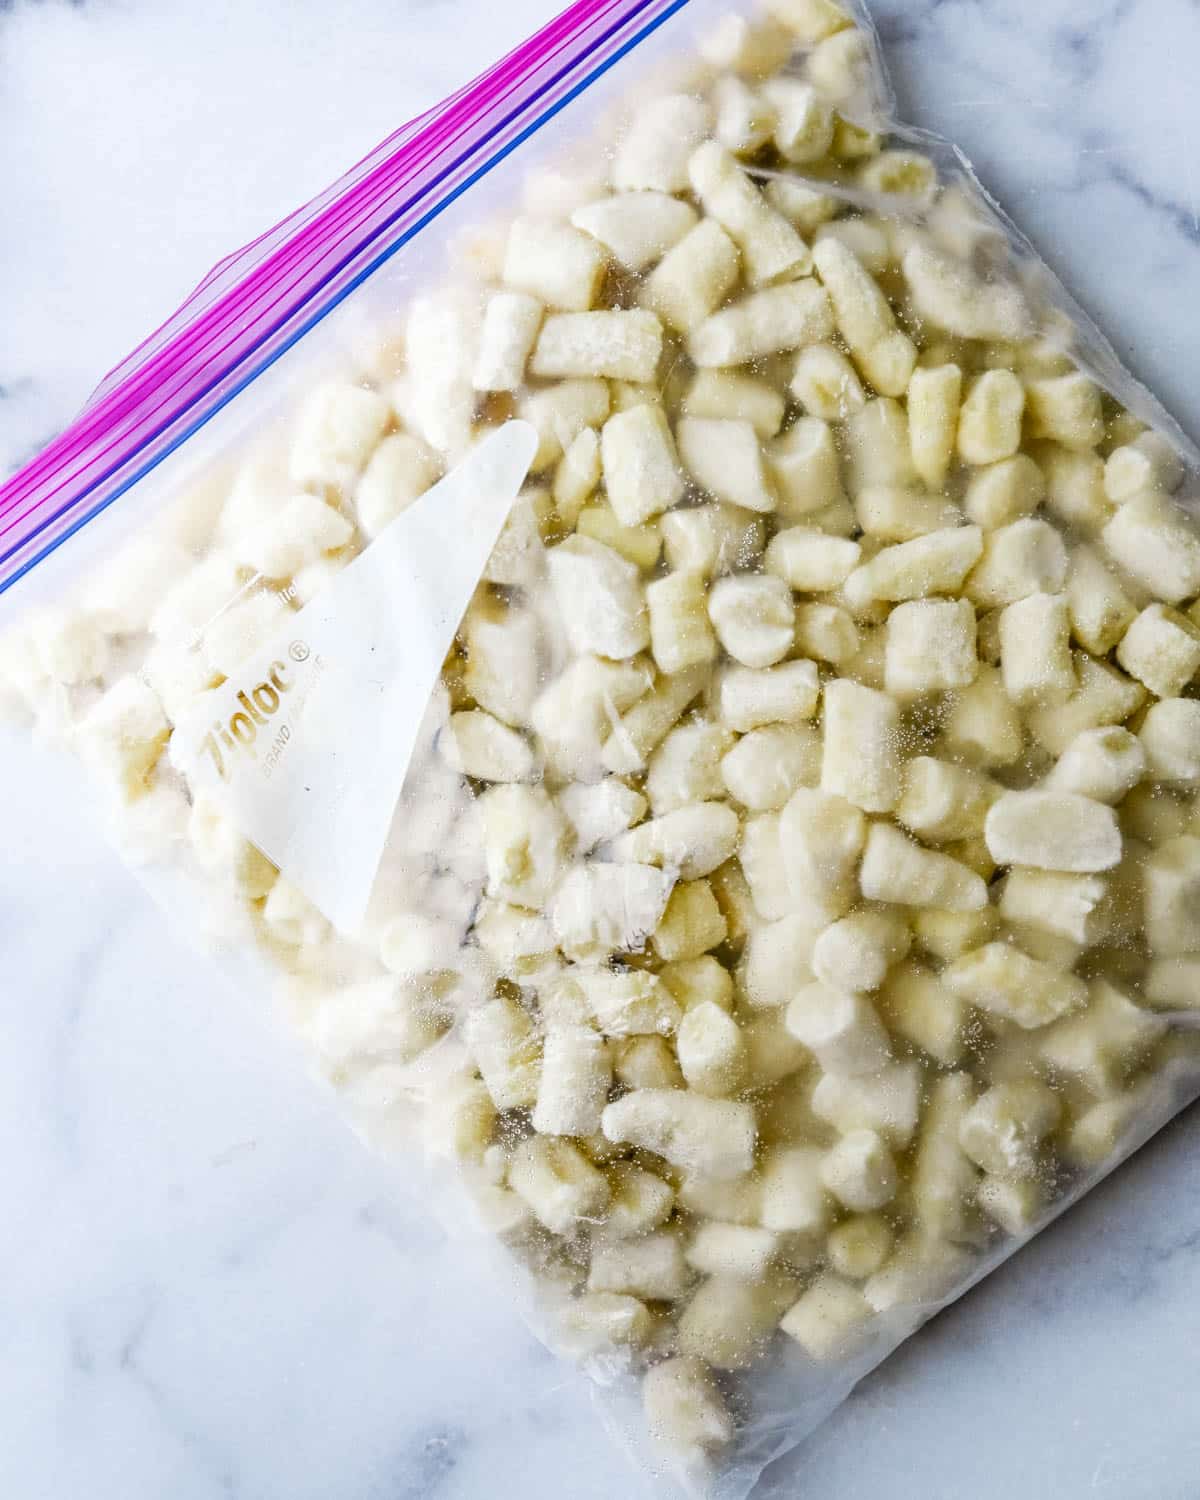 a bag of frozen gnocchi.